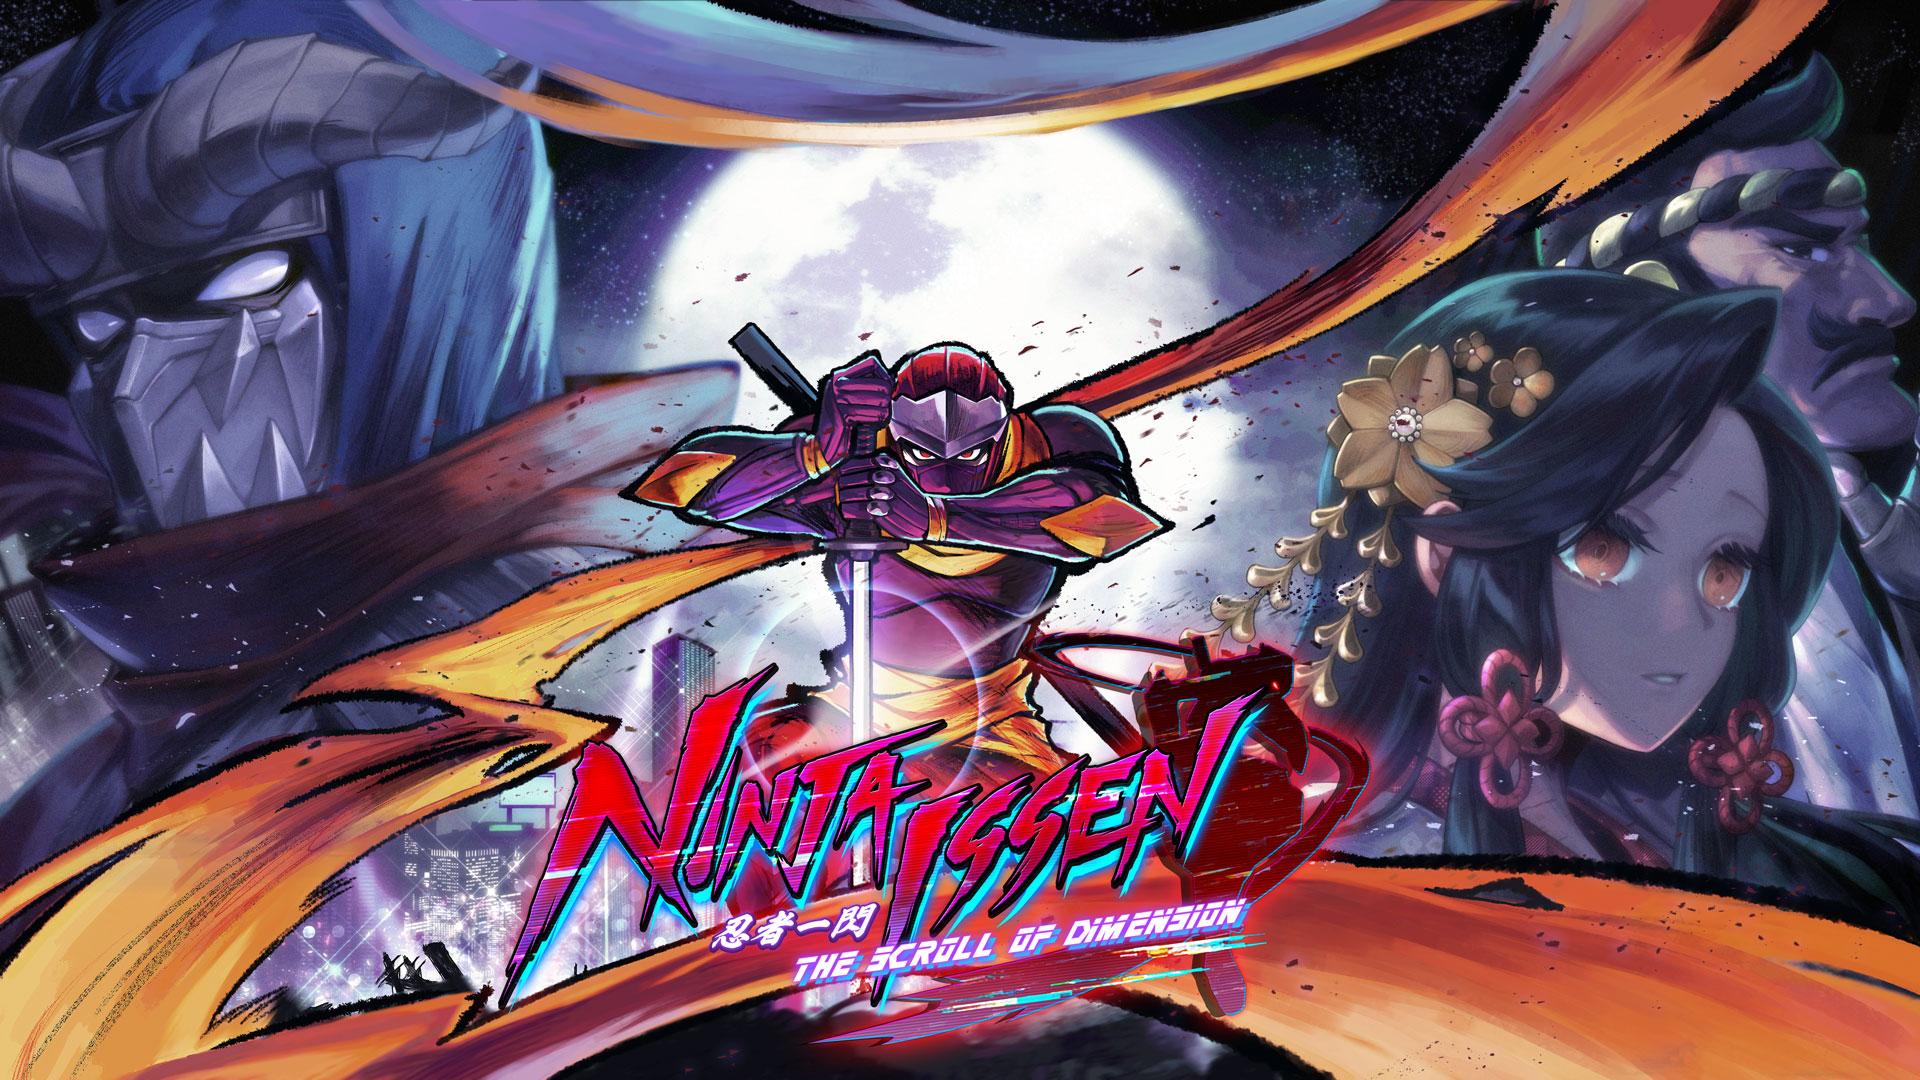 Ninja Issen playable demo